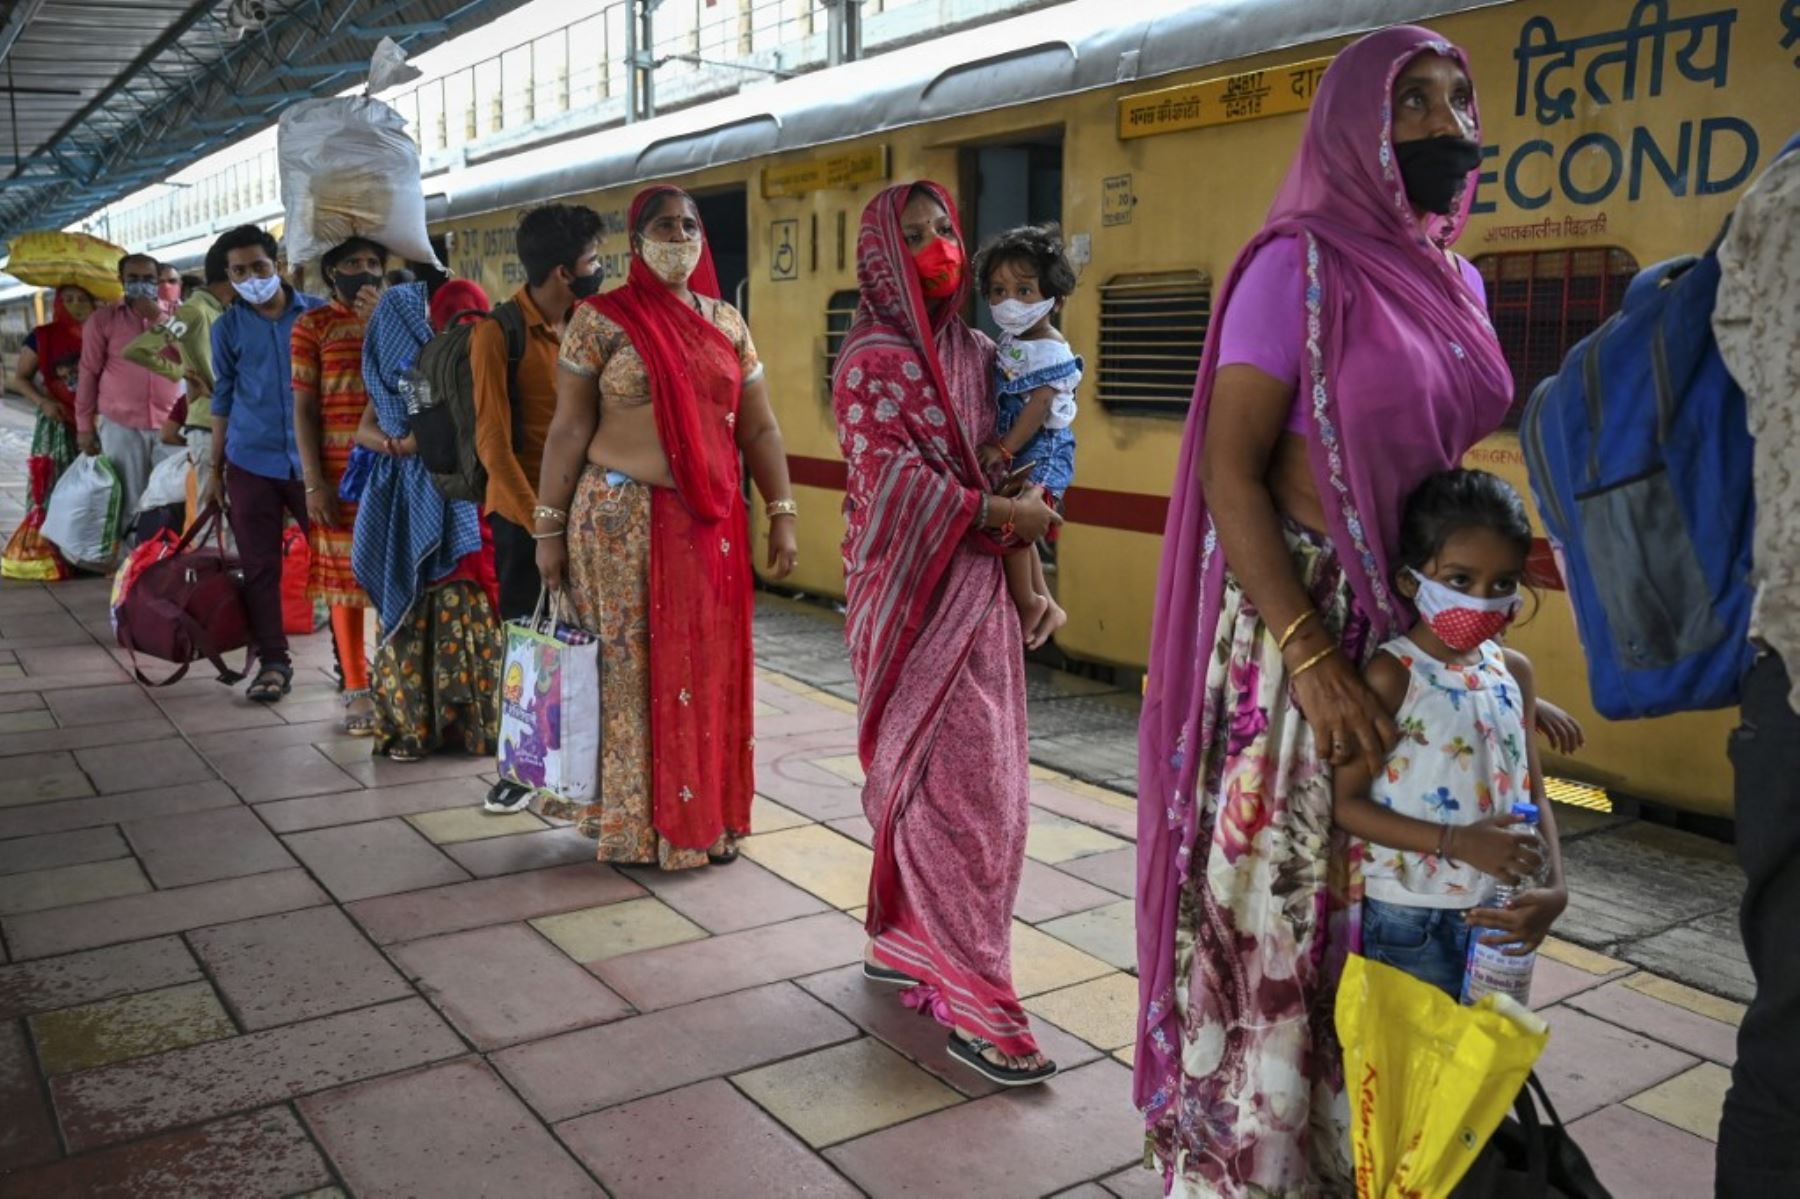 Los pasajeros hacen cola para controlar su temperatura corporal durante una prueba de detección del coronavirus Covid-19 después de llegar a una plataforma ferroviaria en un tren de larga distancia, en Mumbai el 8 de junio de 2021. Foto: AFP